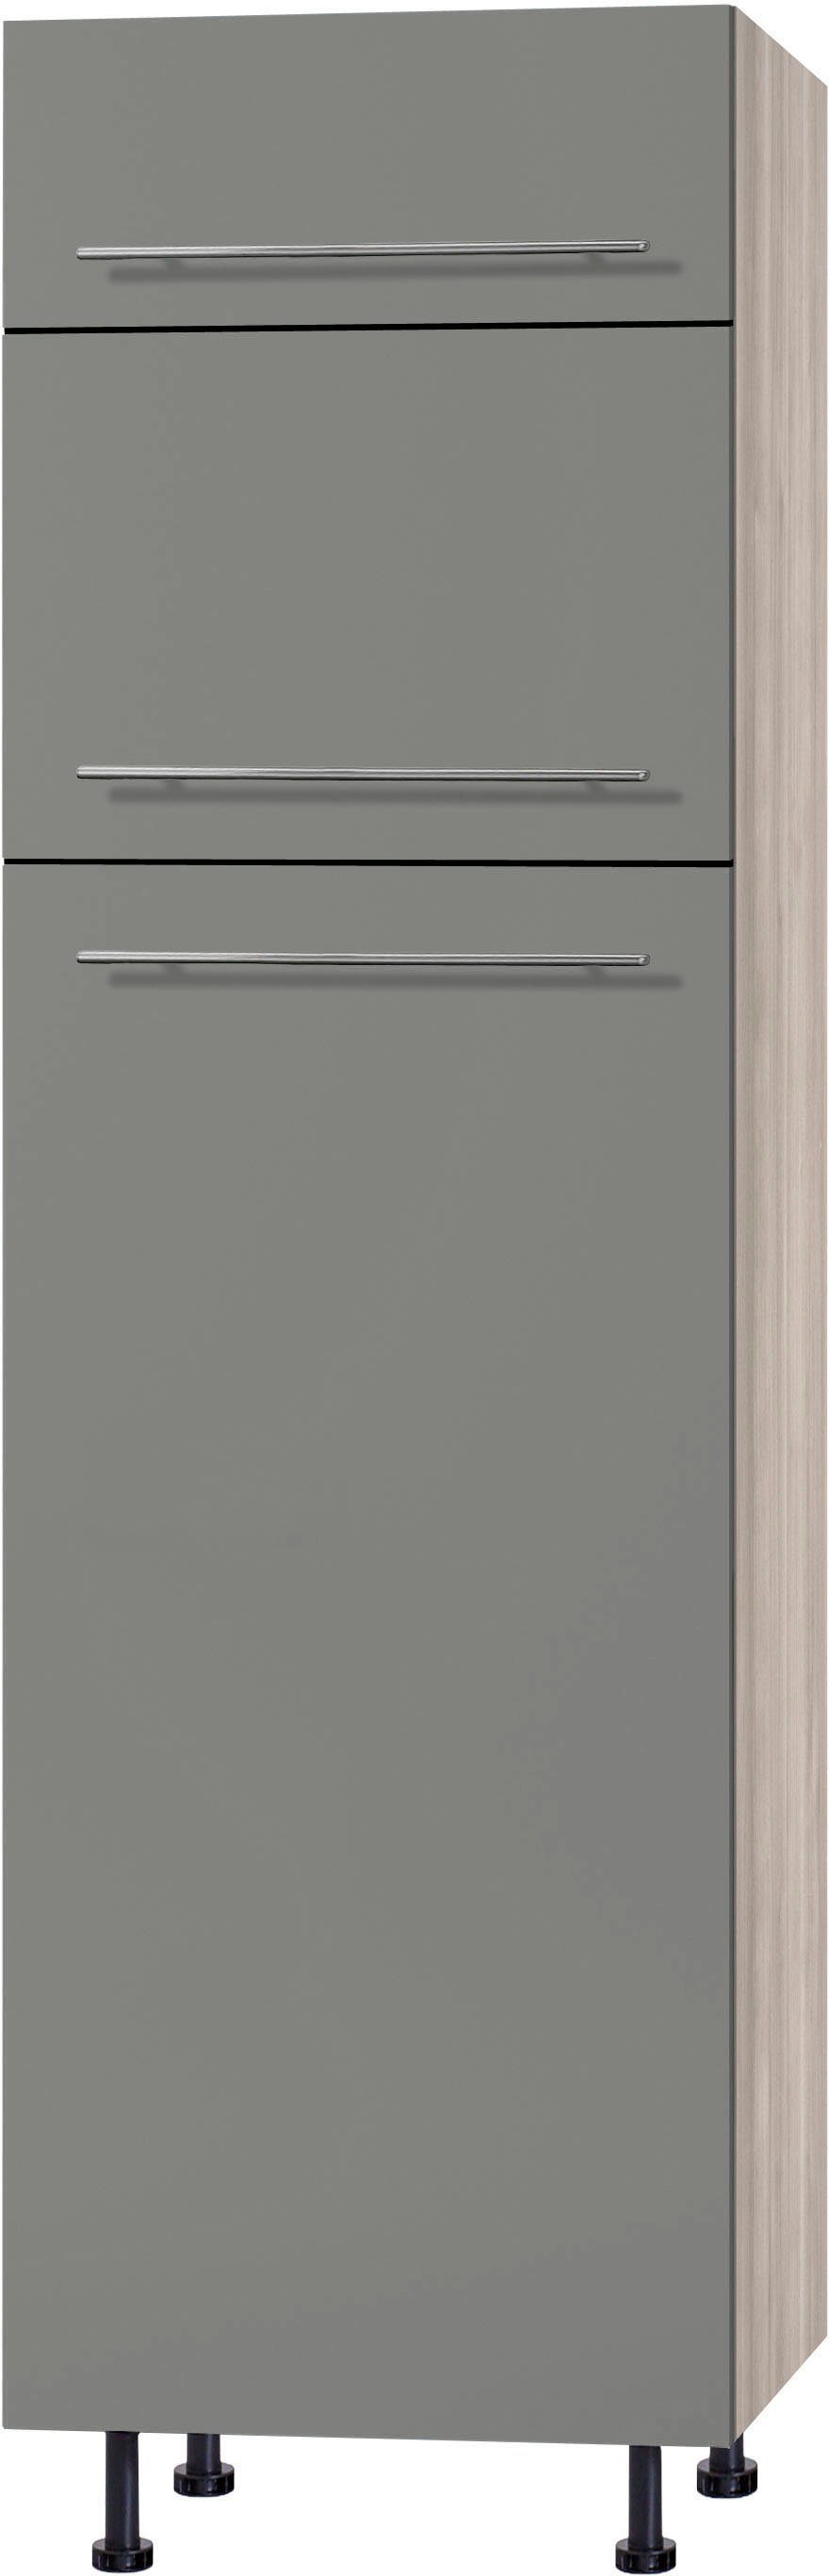 OPTIFIT Kühlumbauschrank Bern 60 cm breit, 212 cm hoch, mit höhenverstellbaren Stellfüßen basaltgrau/akaziefarben | akaziefarben